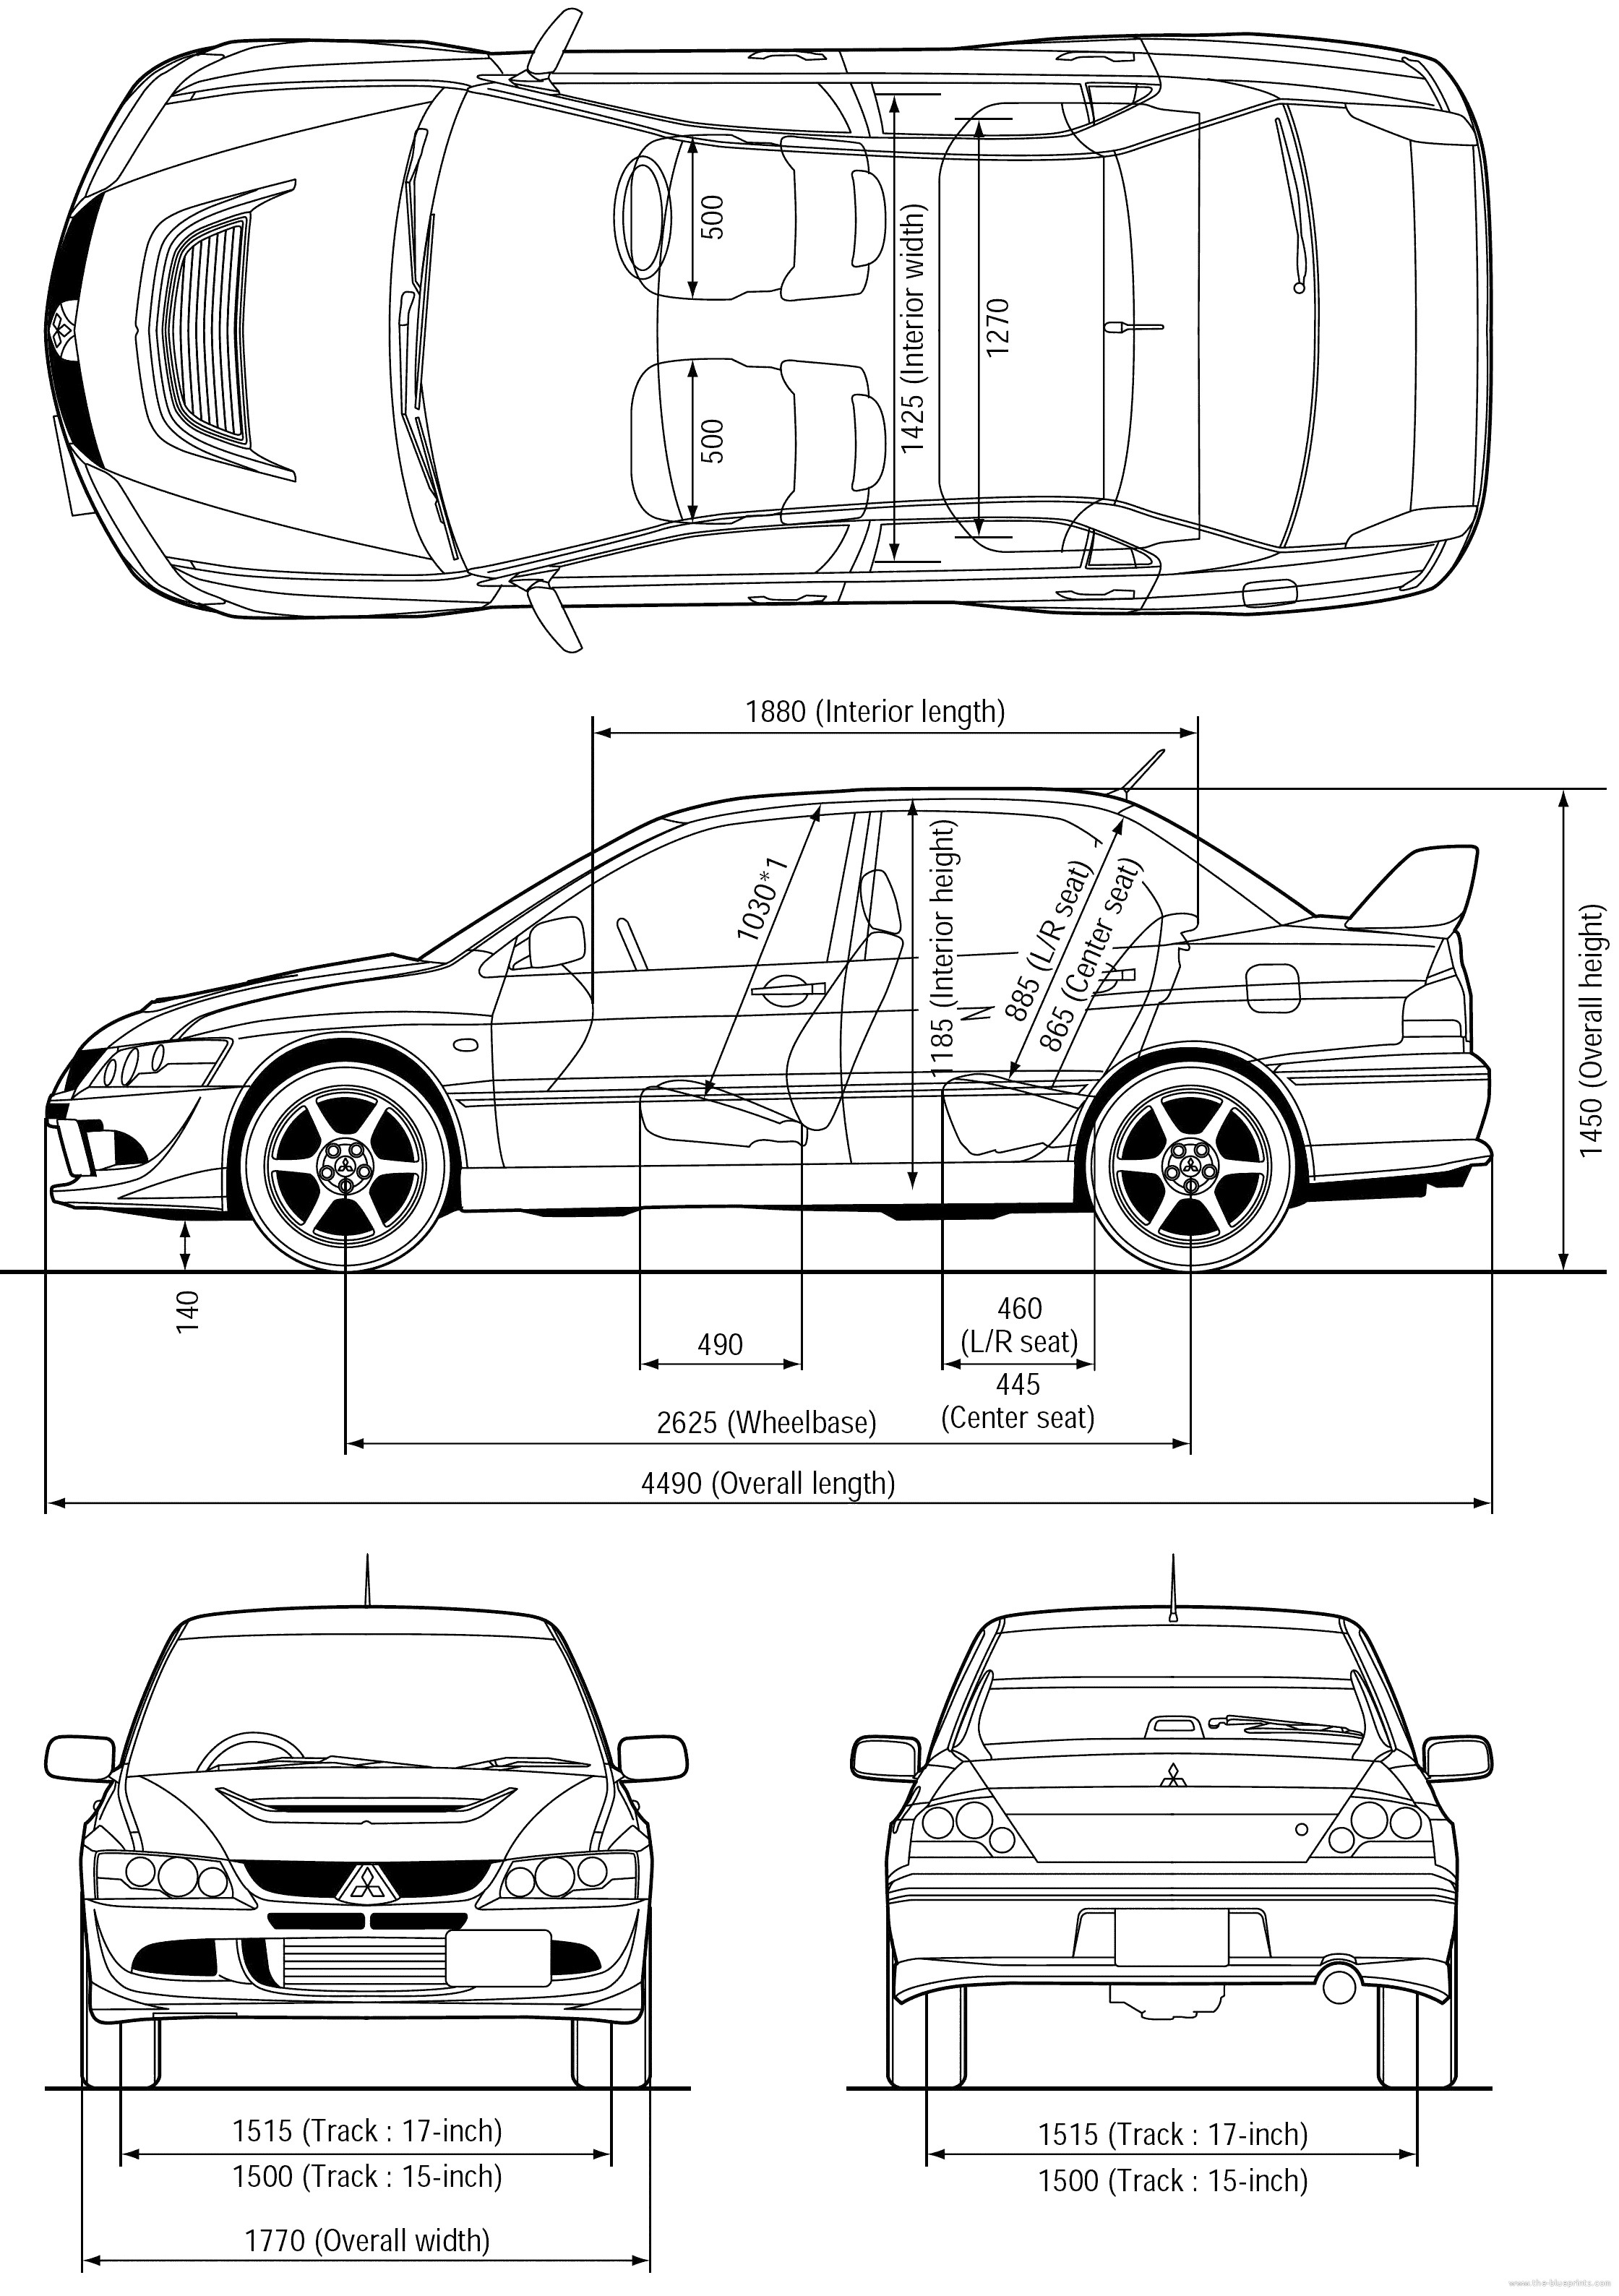 Diagram Of Car Exterior Parts Mitsubishi Lancer Evo 8 Cars Pinterest Of Diagram Of Car Exterior Parts